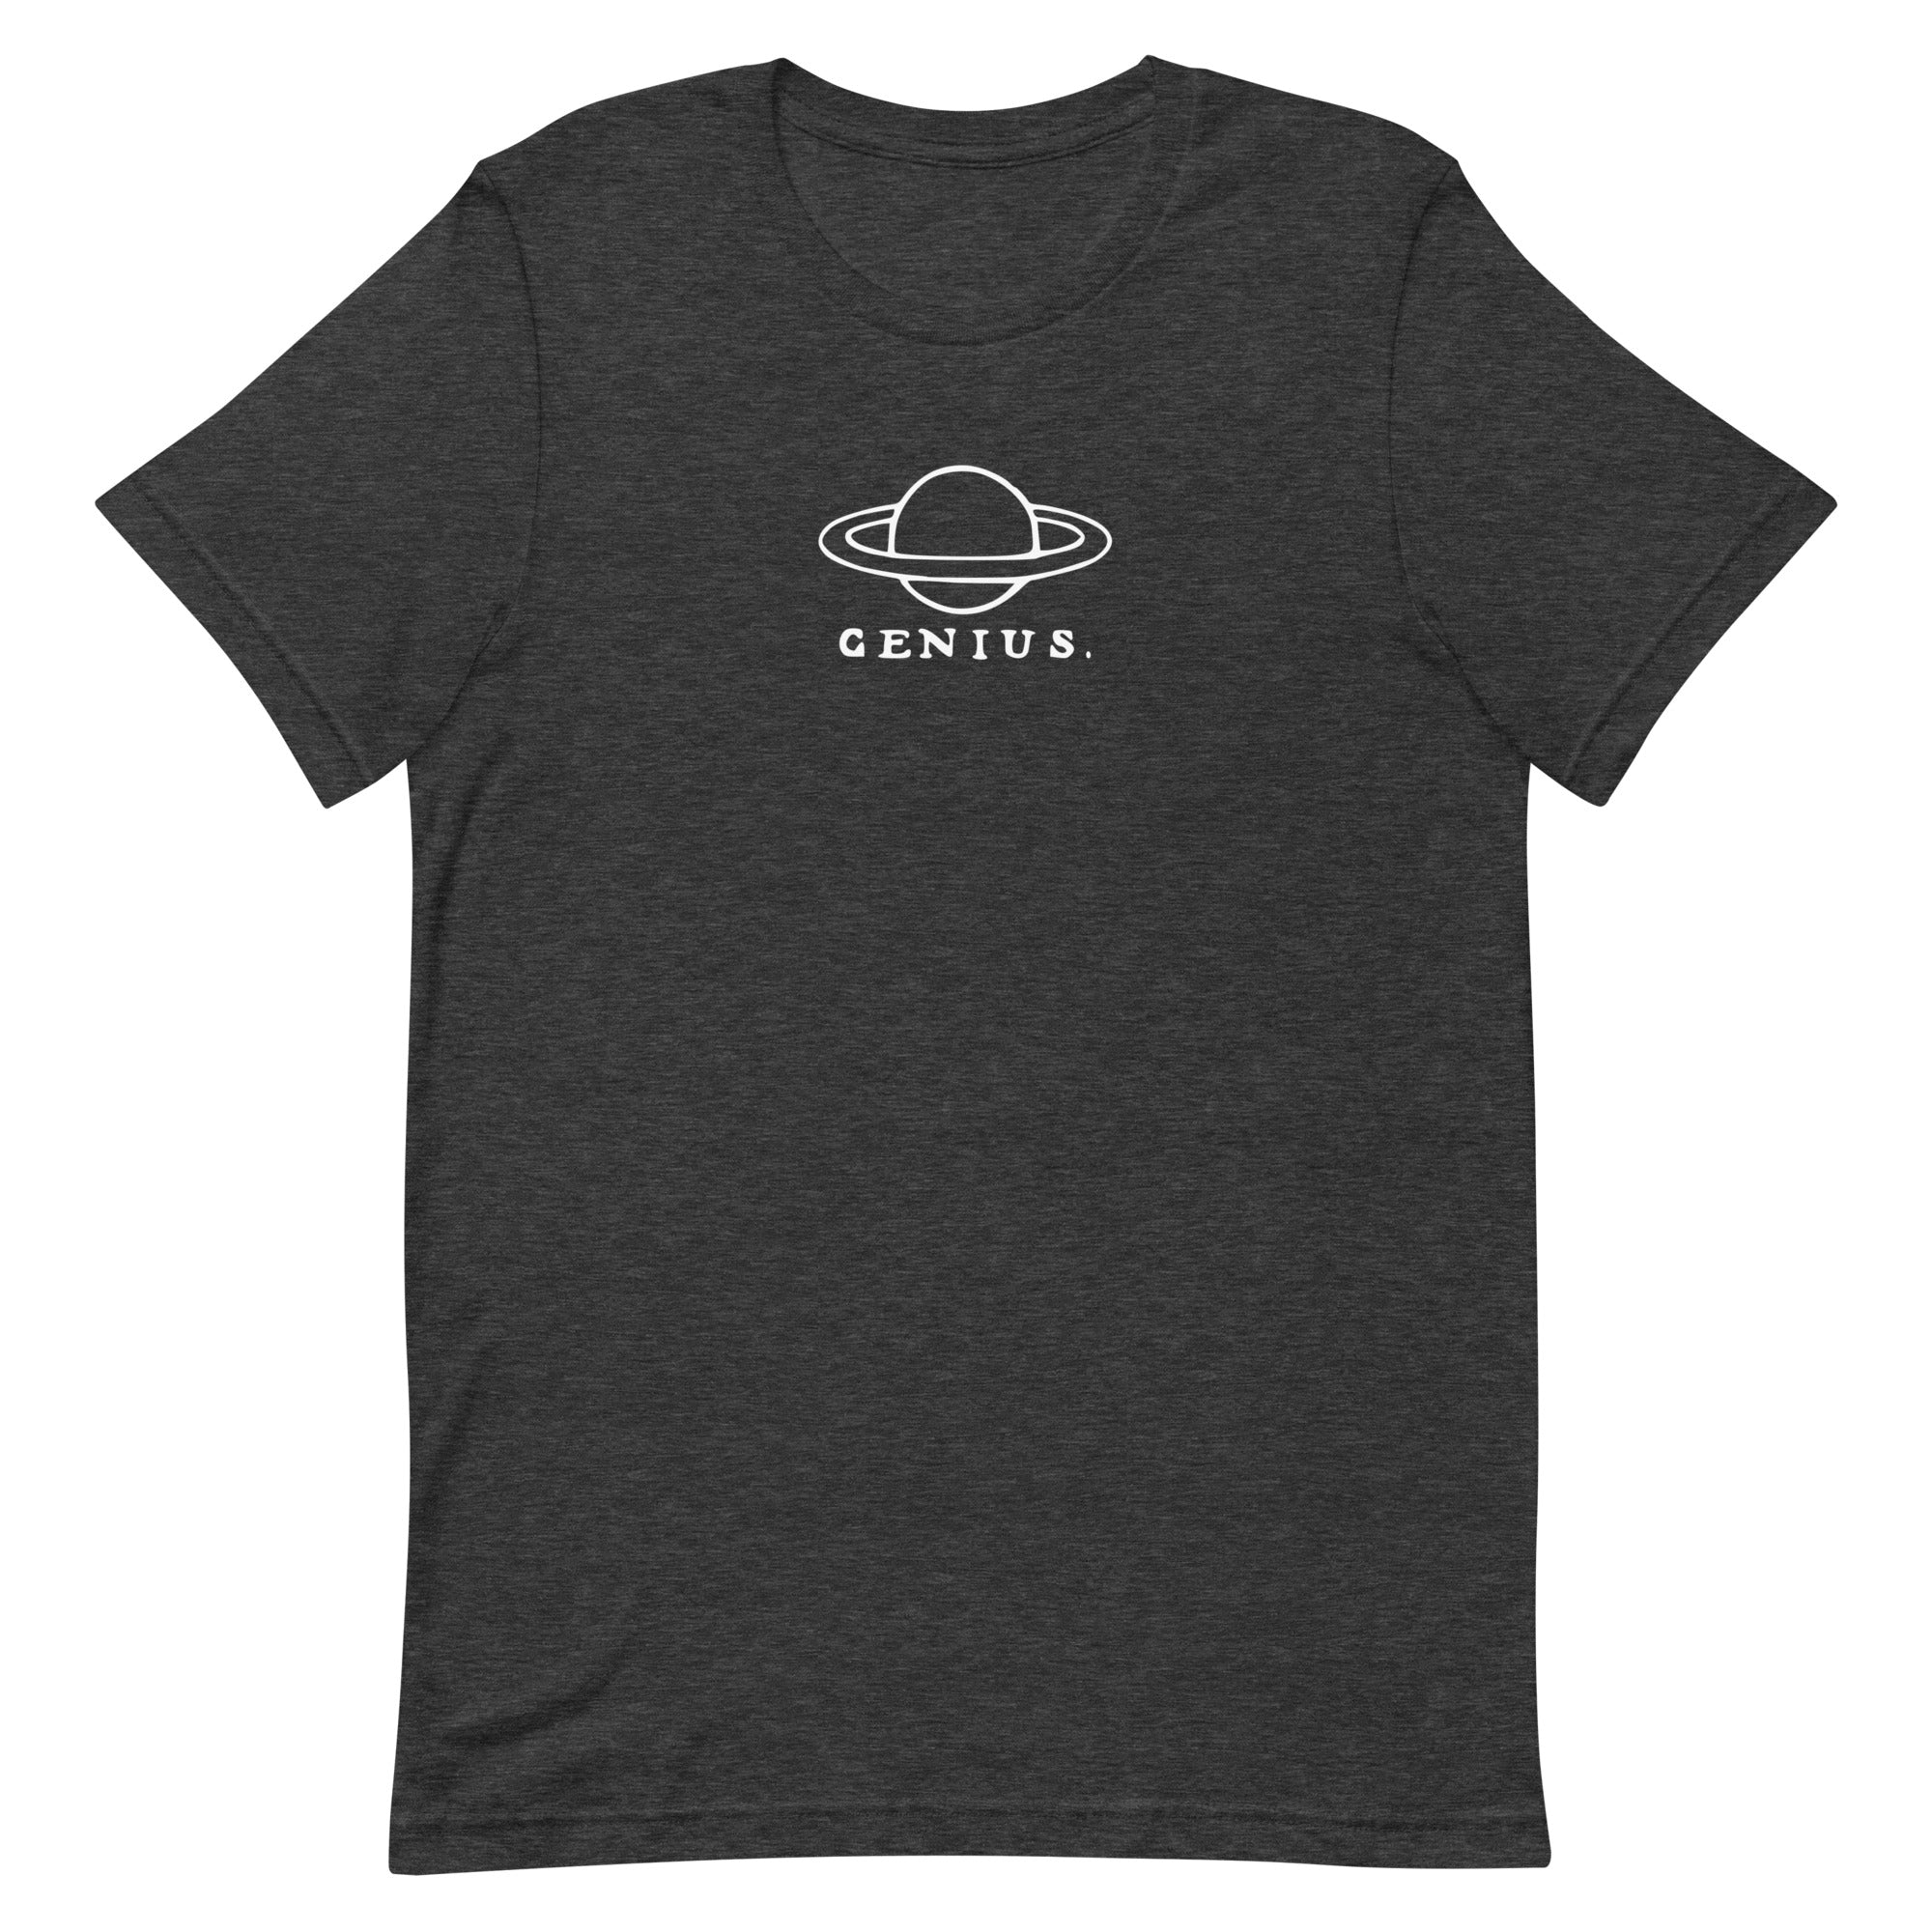 Unisex t-shirt - Genius